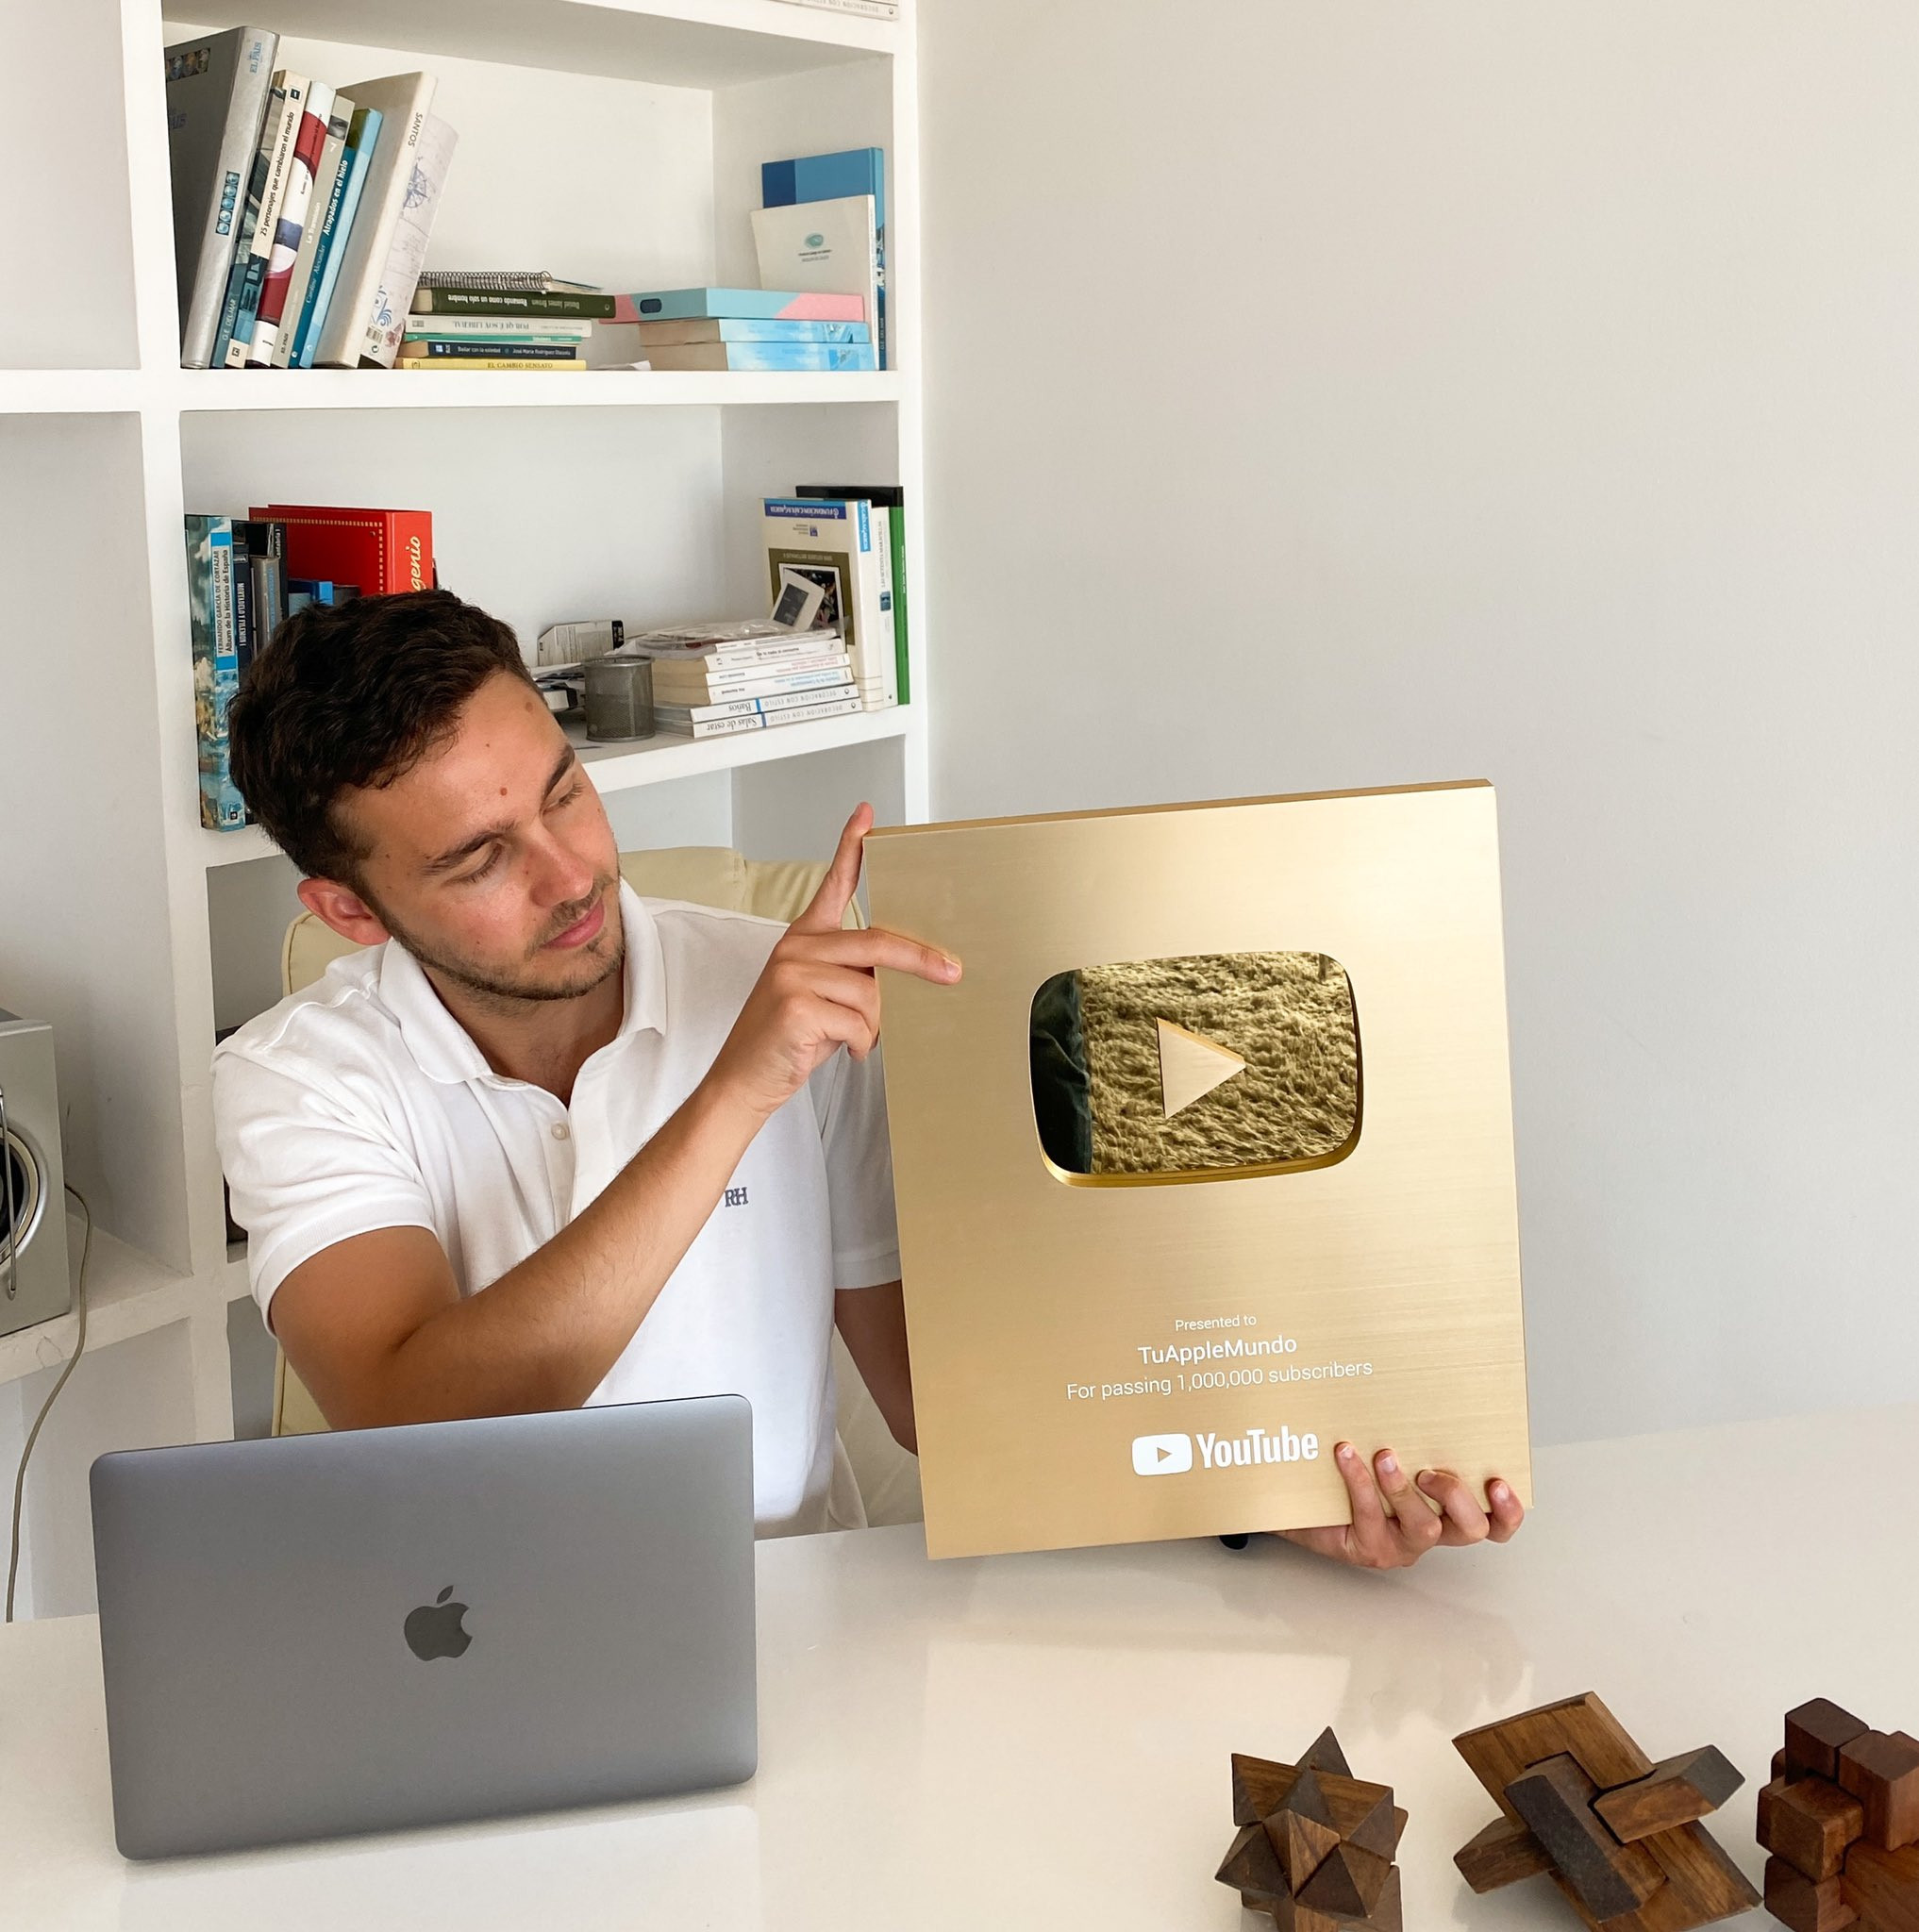 Recibió de YouTube una placa de oro al pasar del millón de suscriptores. Foto: Cedida